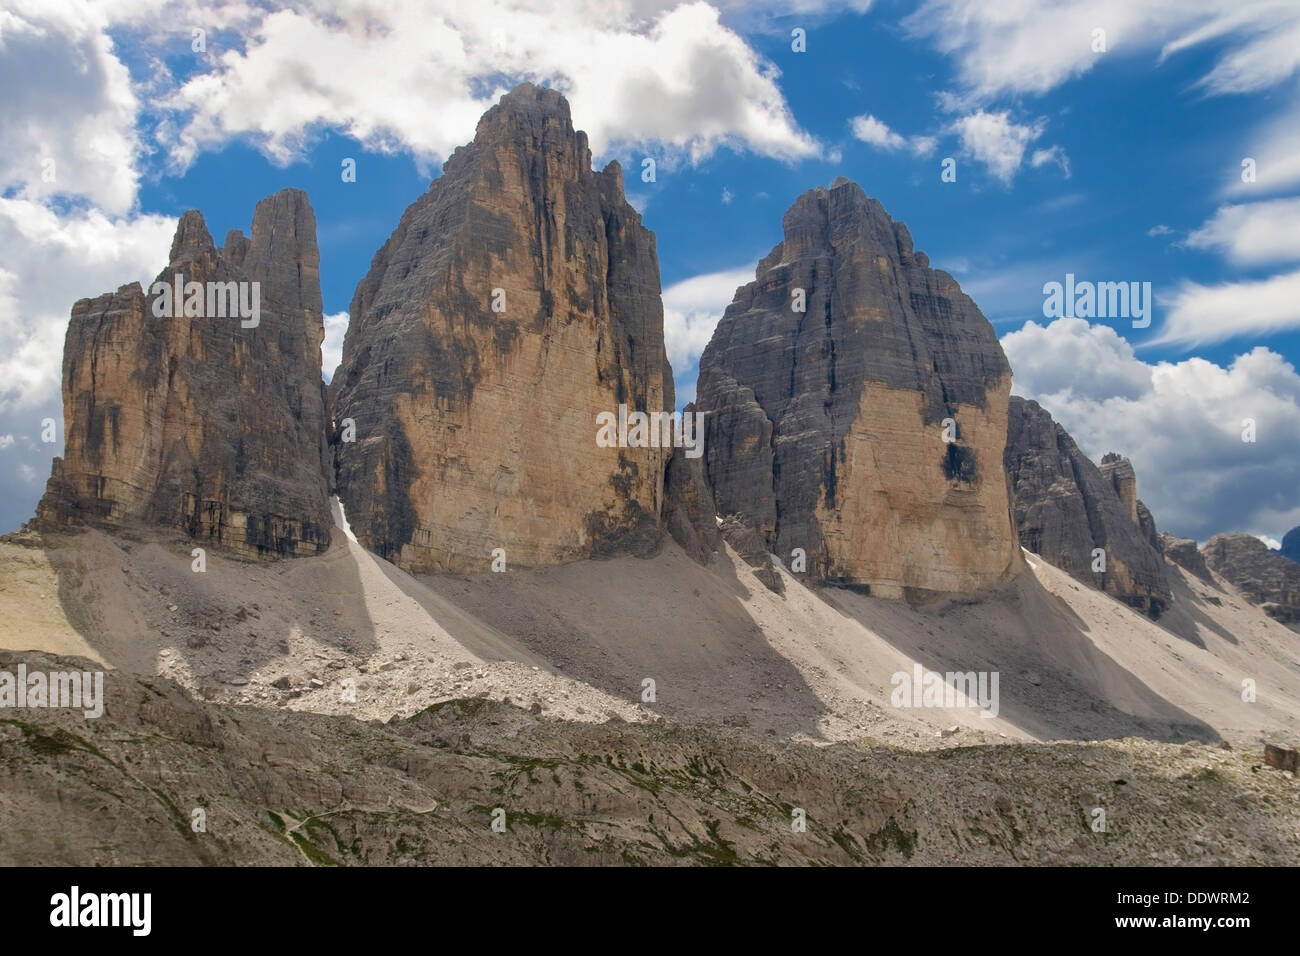 La parete nord delle Tre Cime di Lavaredo (Drei Zinnen) (2999 m), Dolomiti di Sesto, Italia. Foto Stock